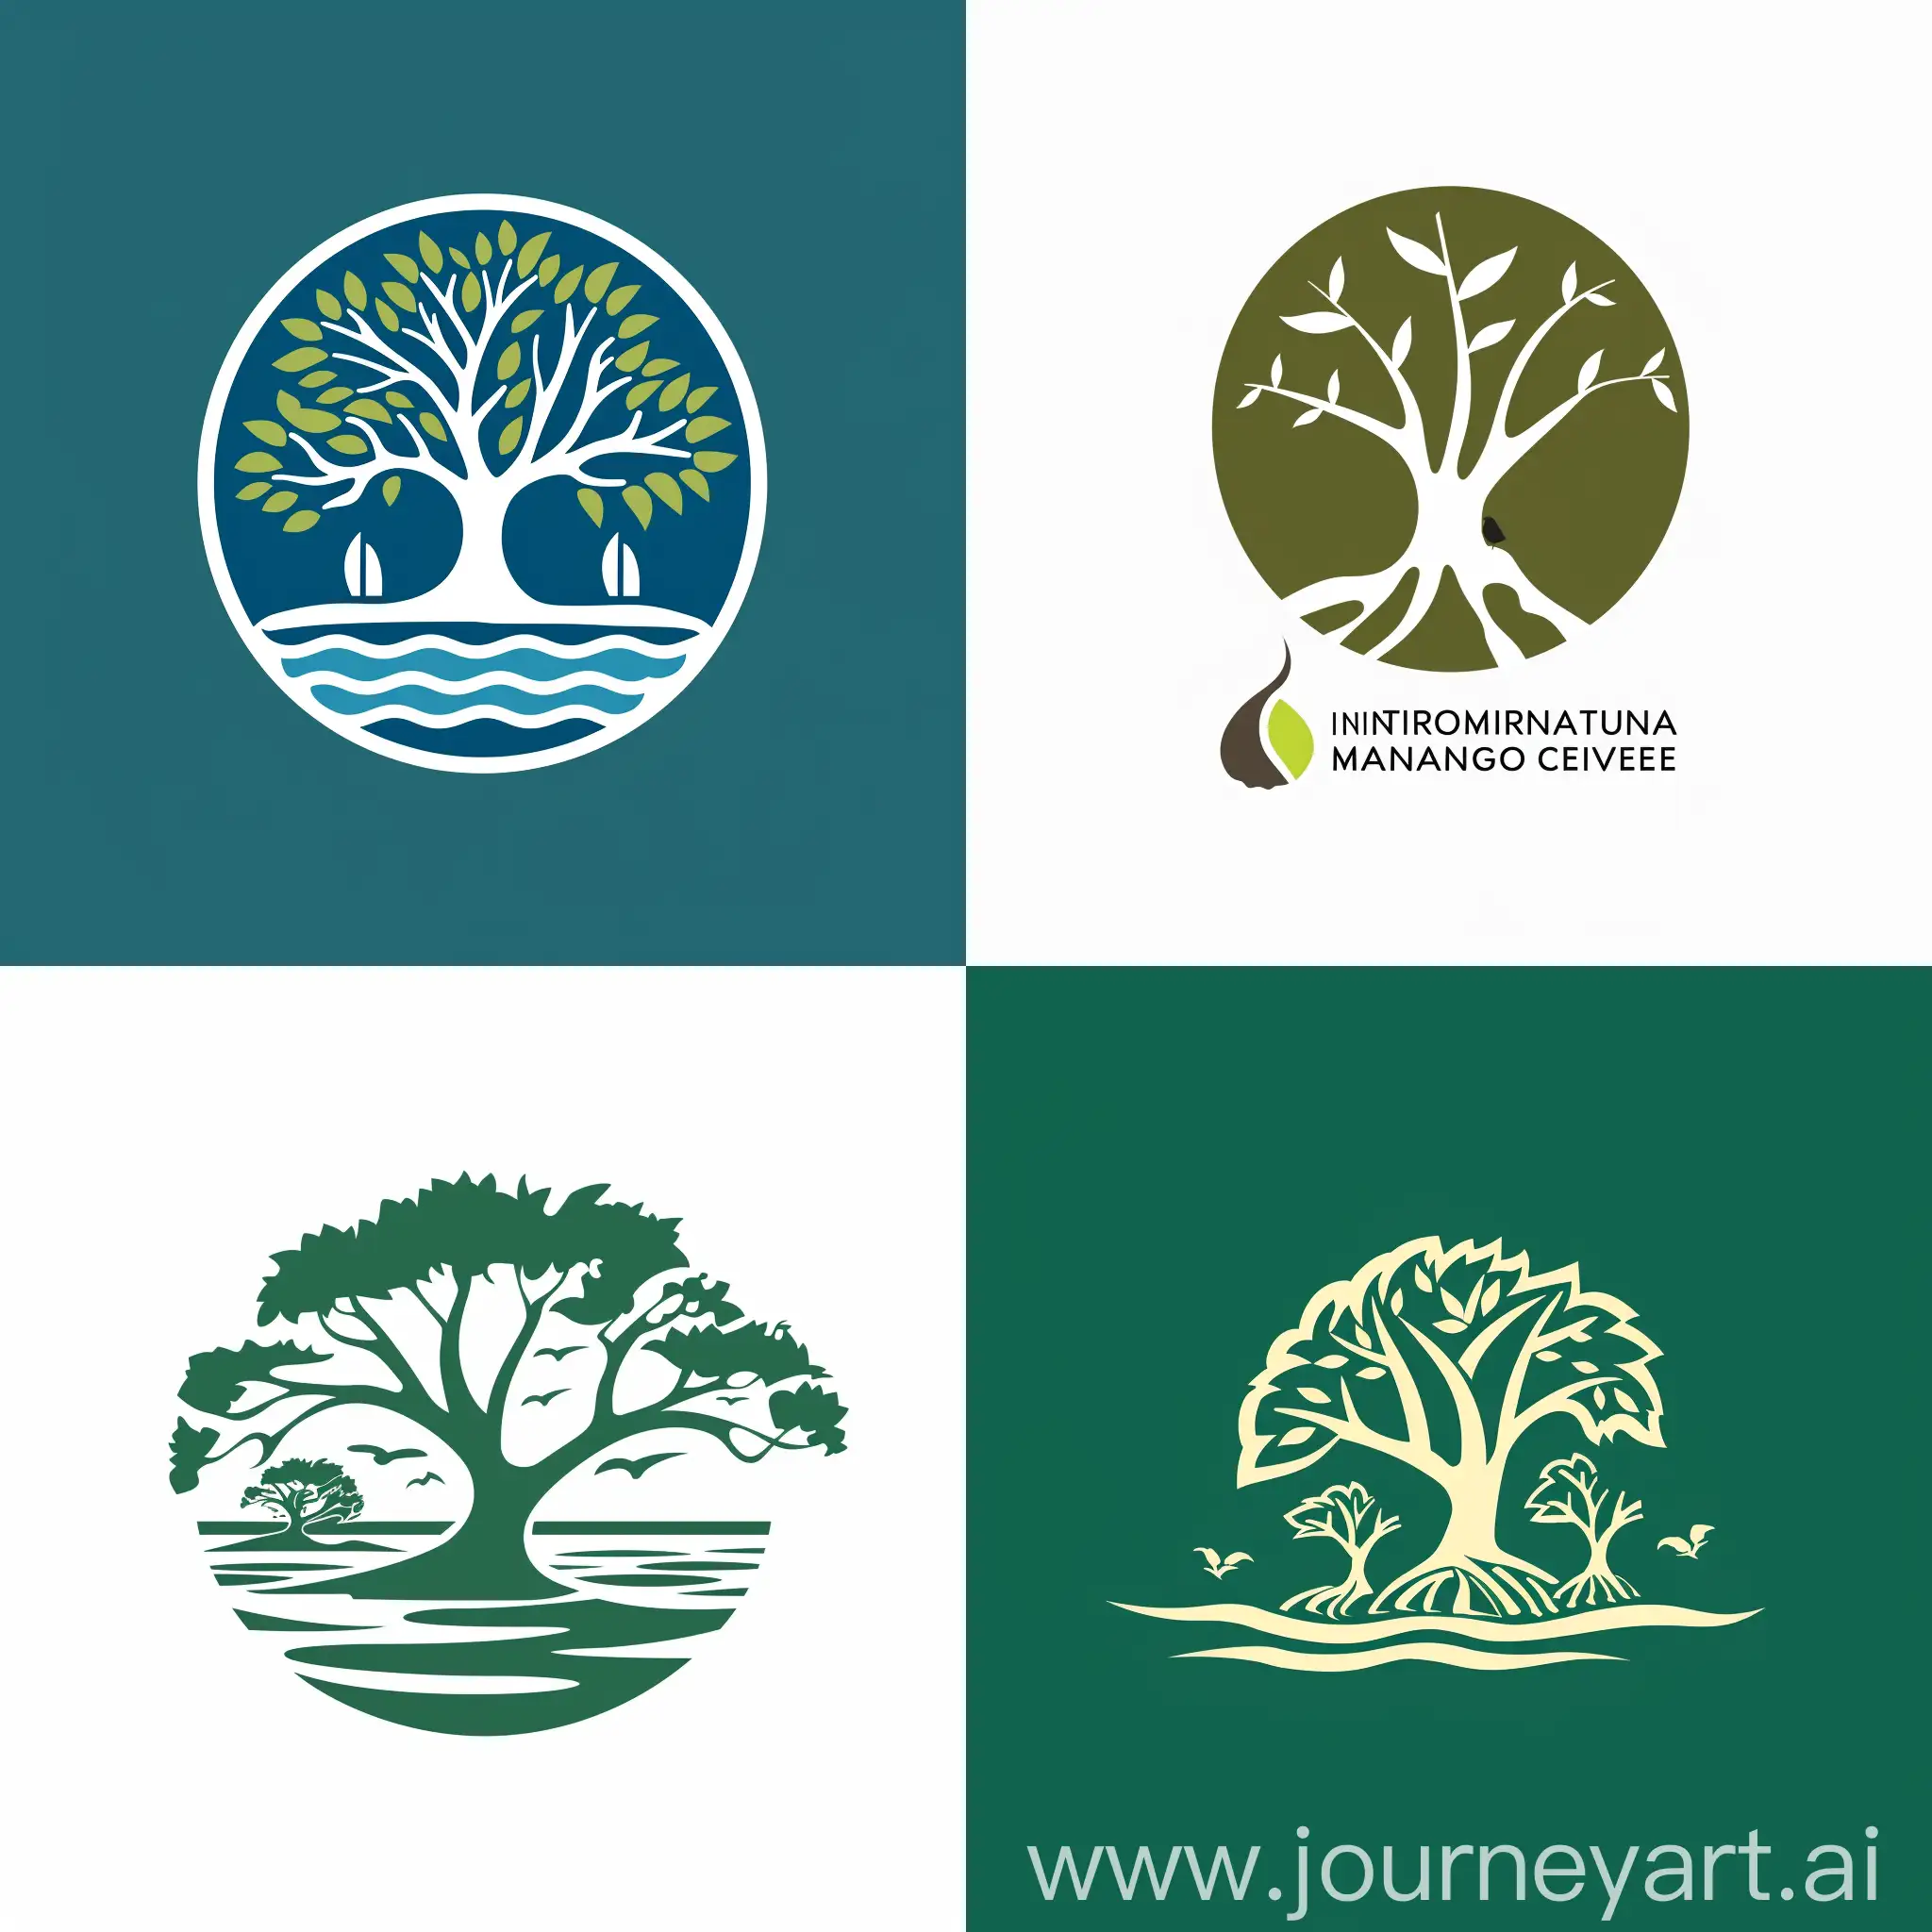 International-Mangrove-Centre-Logo-Vibrant-Emblem-of-Ecological-Preservation